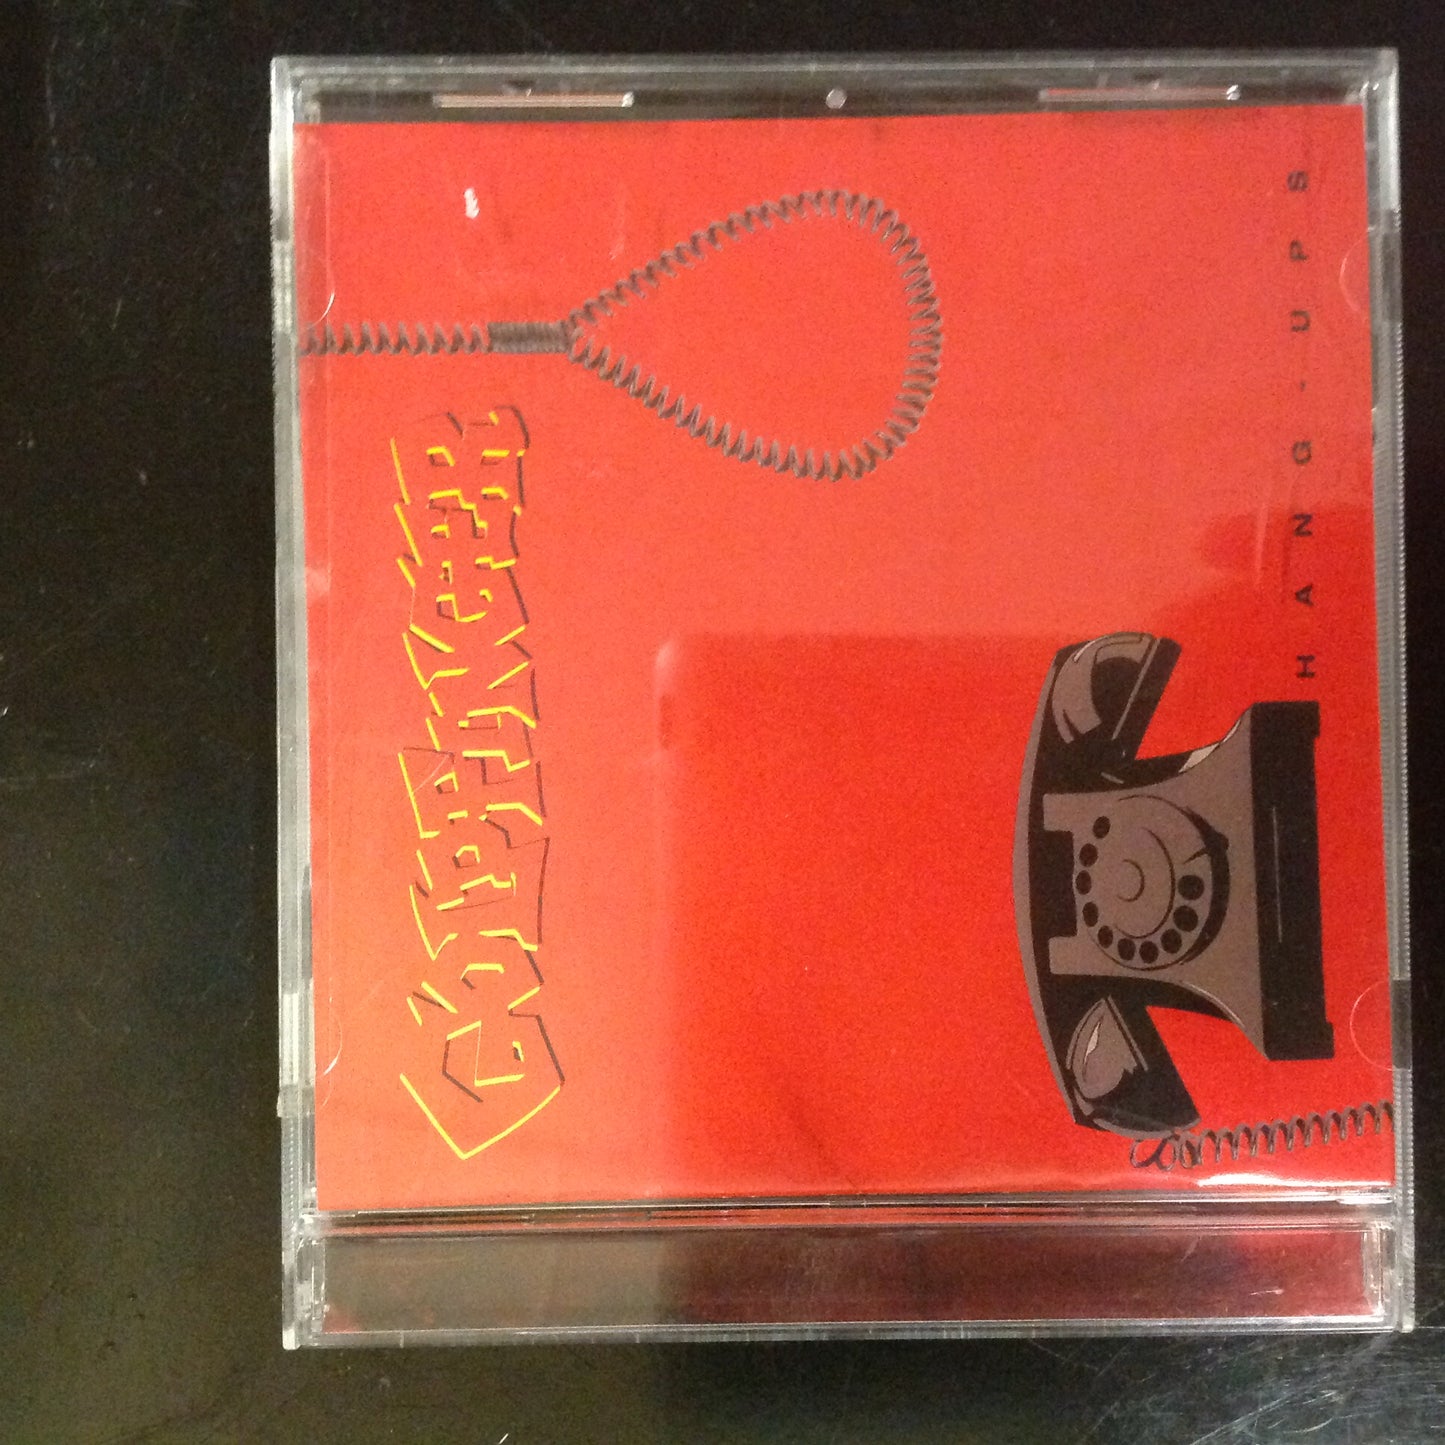 CD Goldfinger Hang-Ups UD-53079 SEALED Unopened